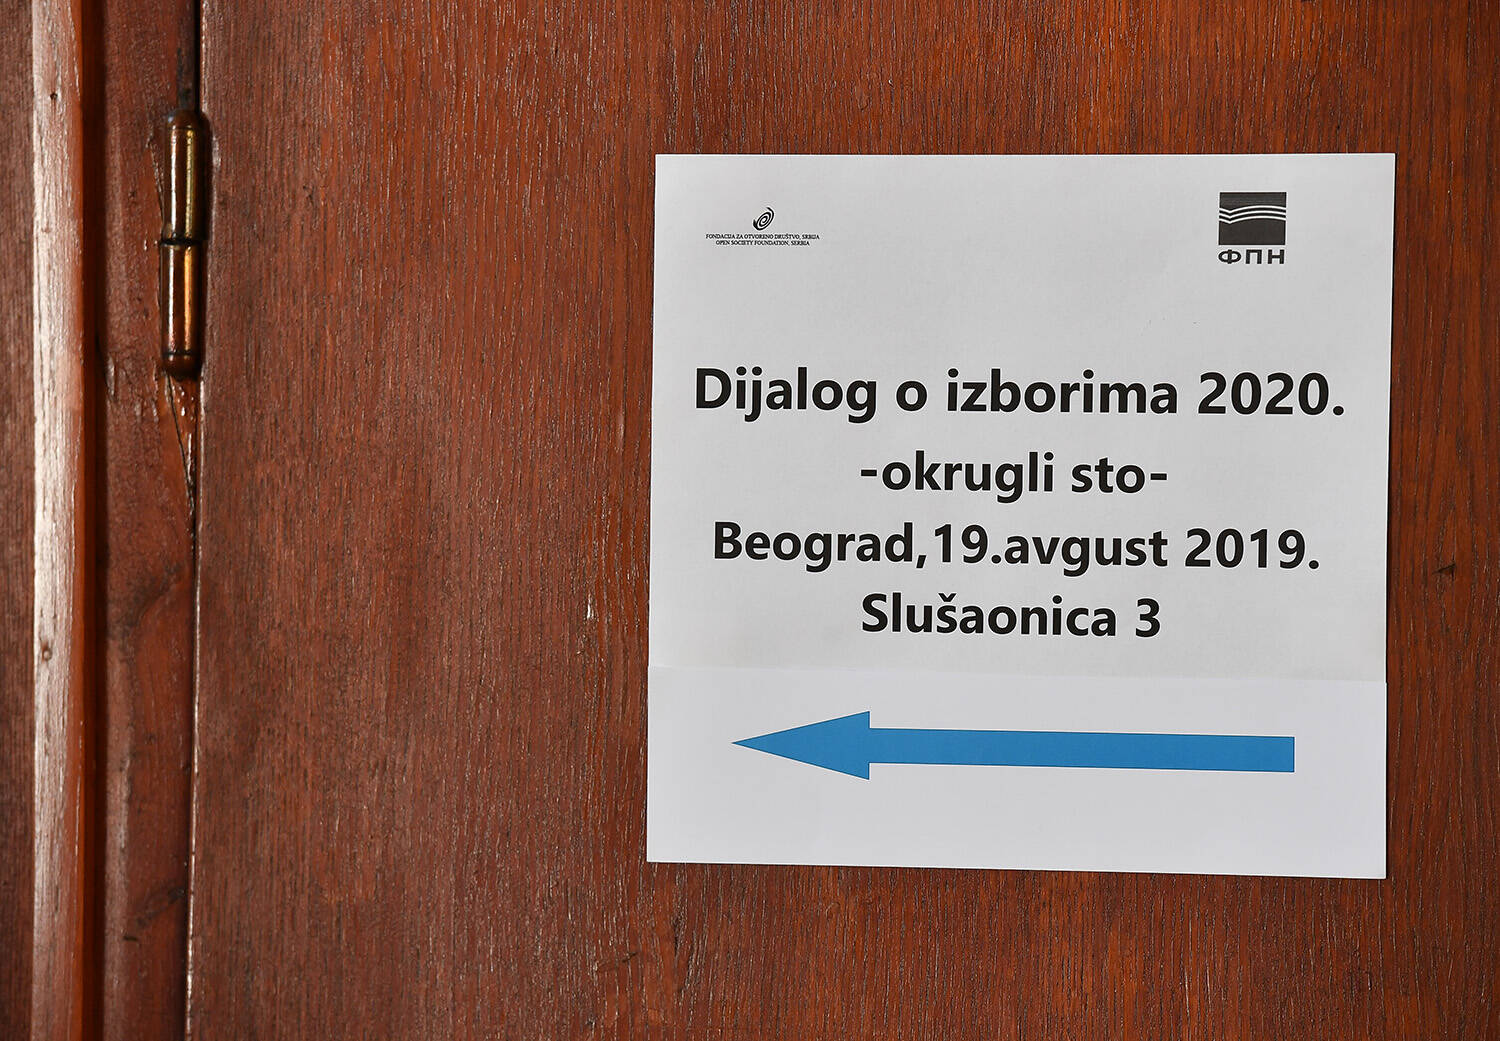 Treći sastanak vlasti i opozicije na Fakultetu političkih nauka / Foto: Srđan Ilić